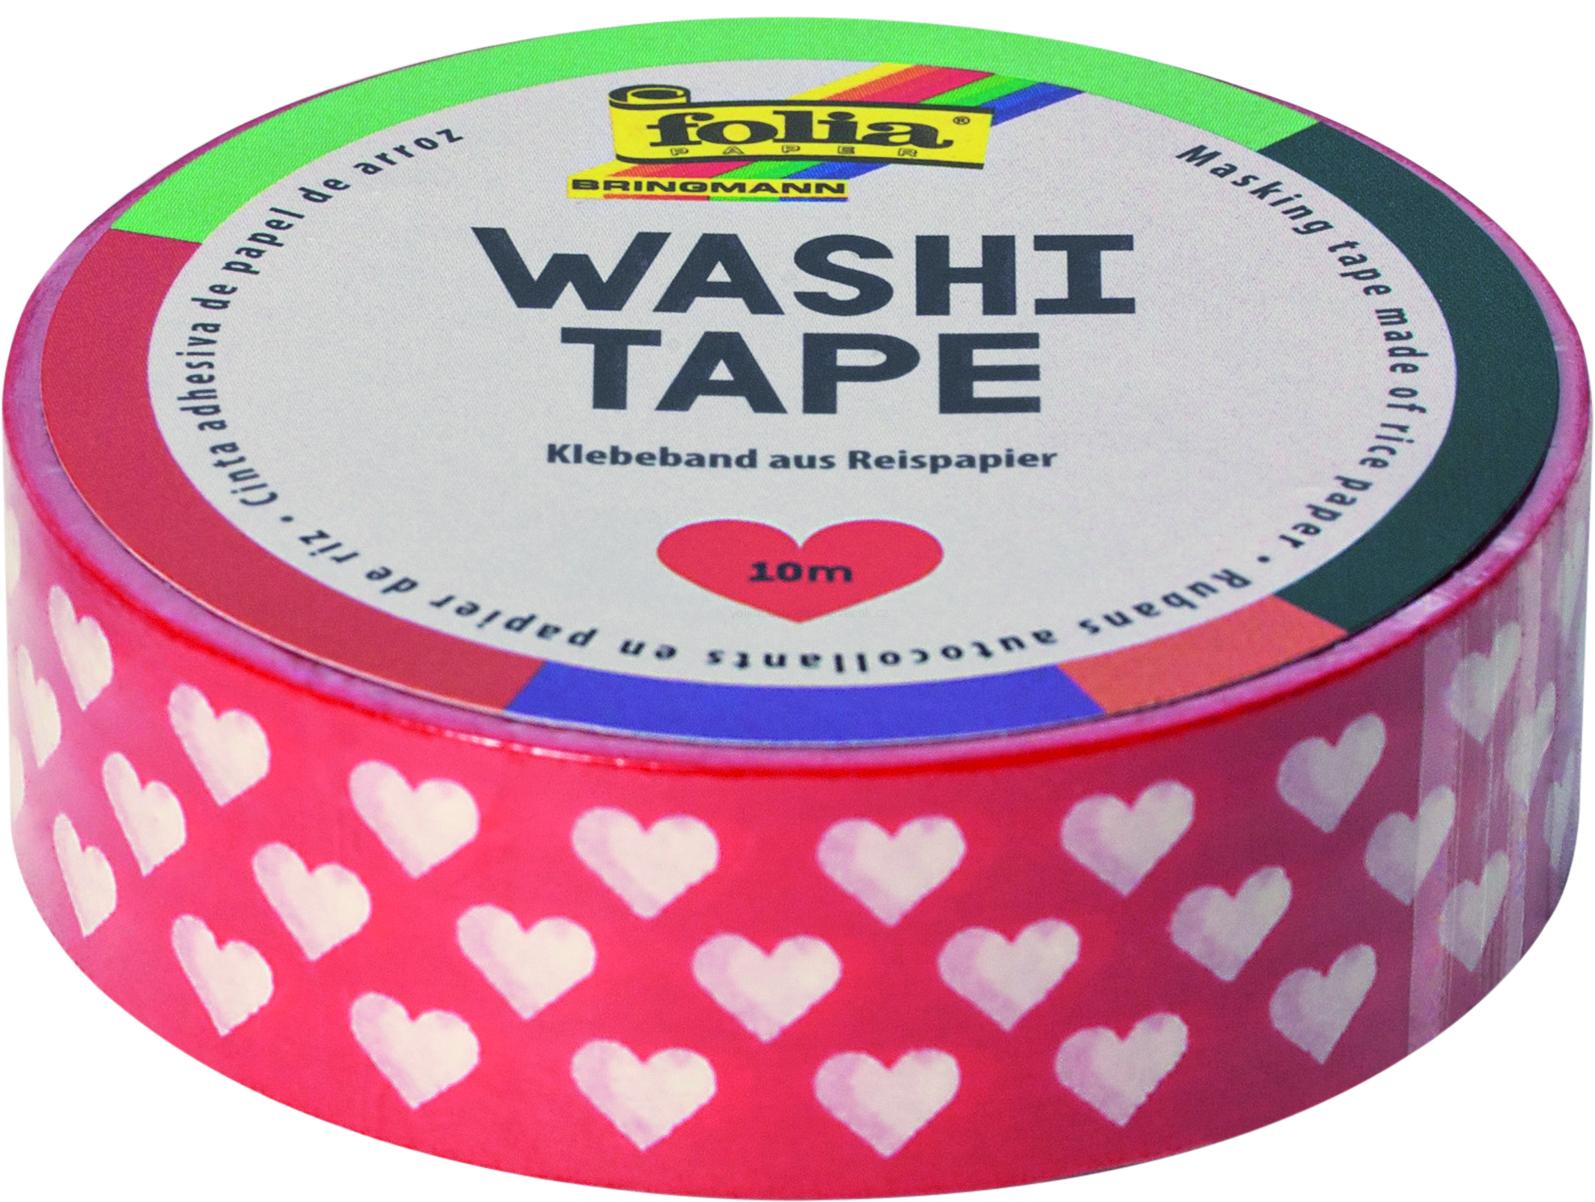 Washi Tape - dekorační lepicí páska - 10 m x 15 mm - červená a bílá srdce